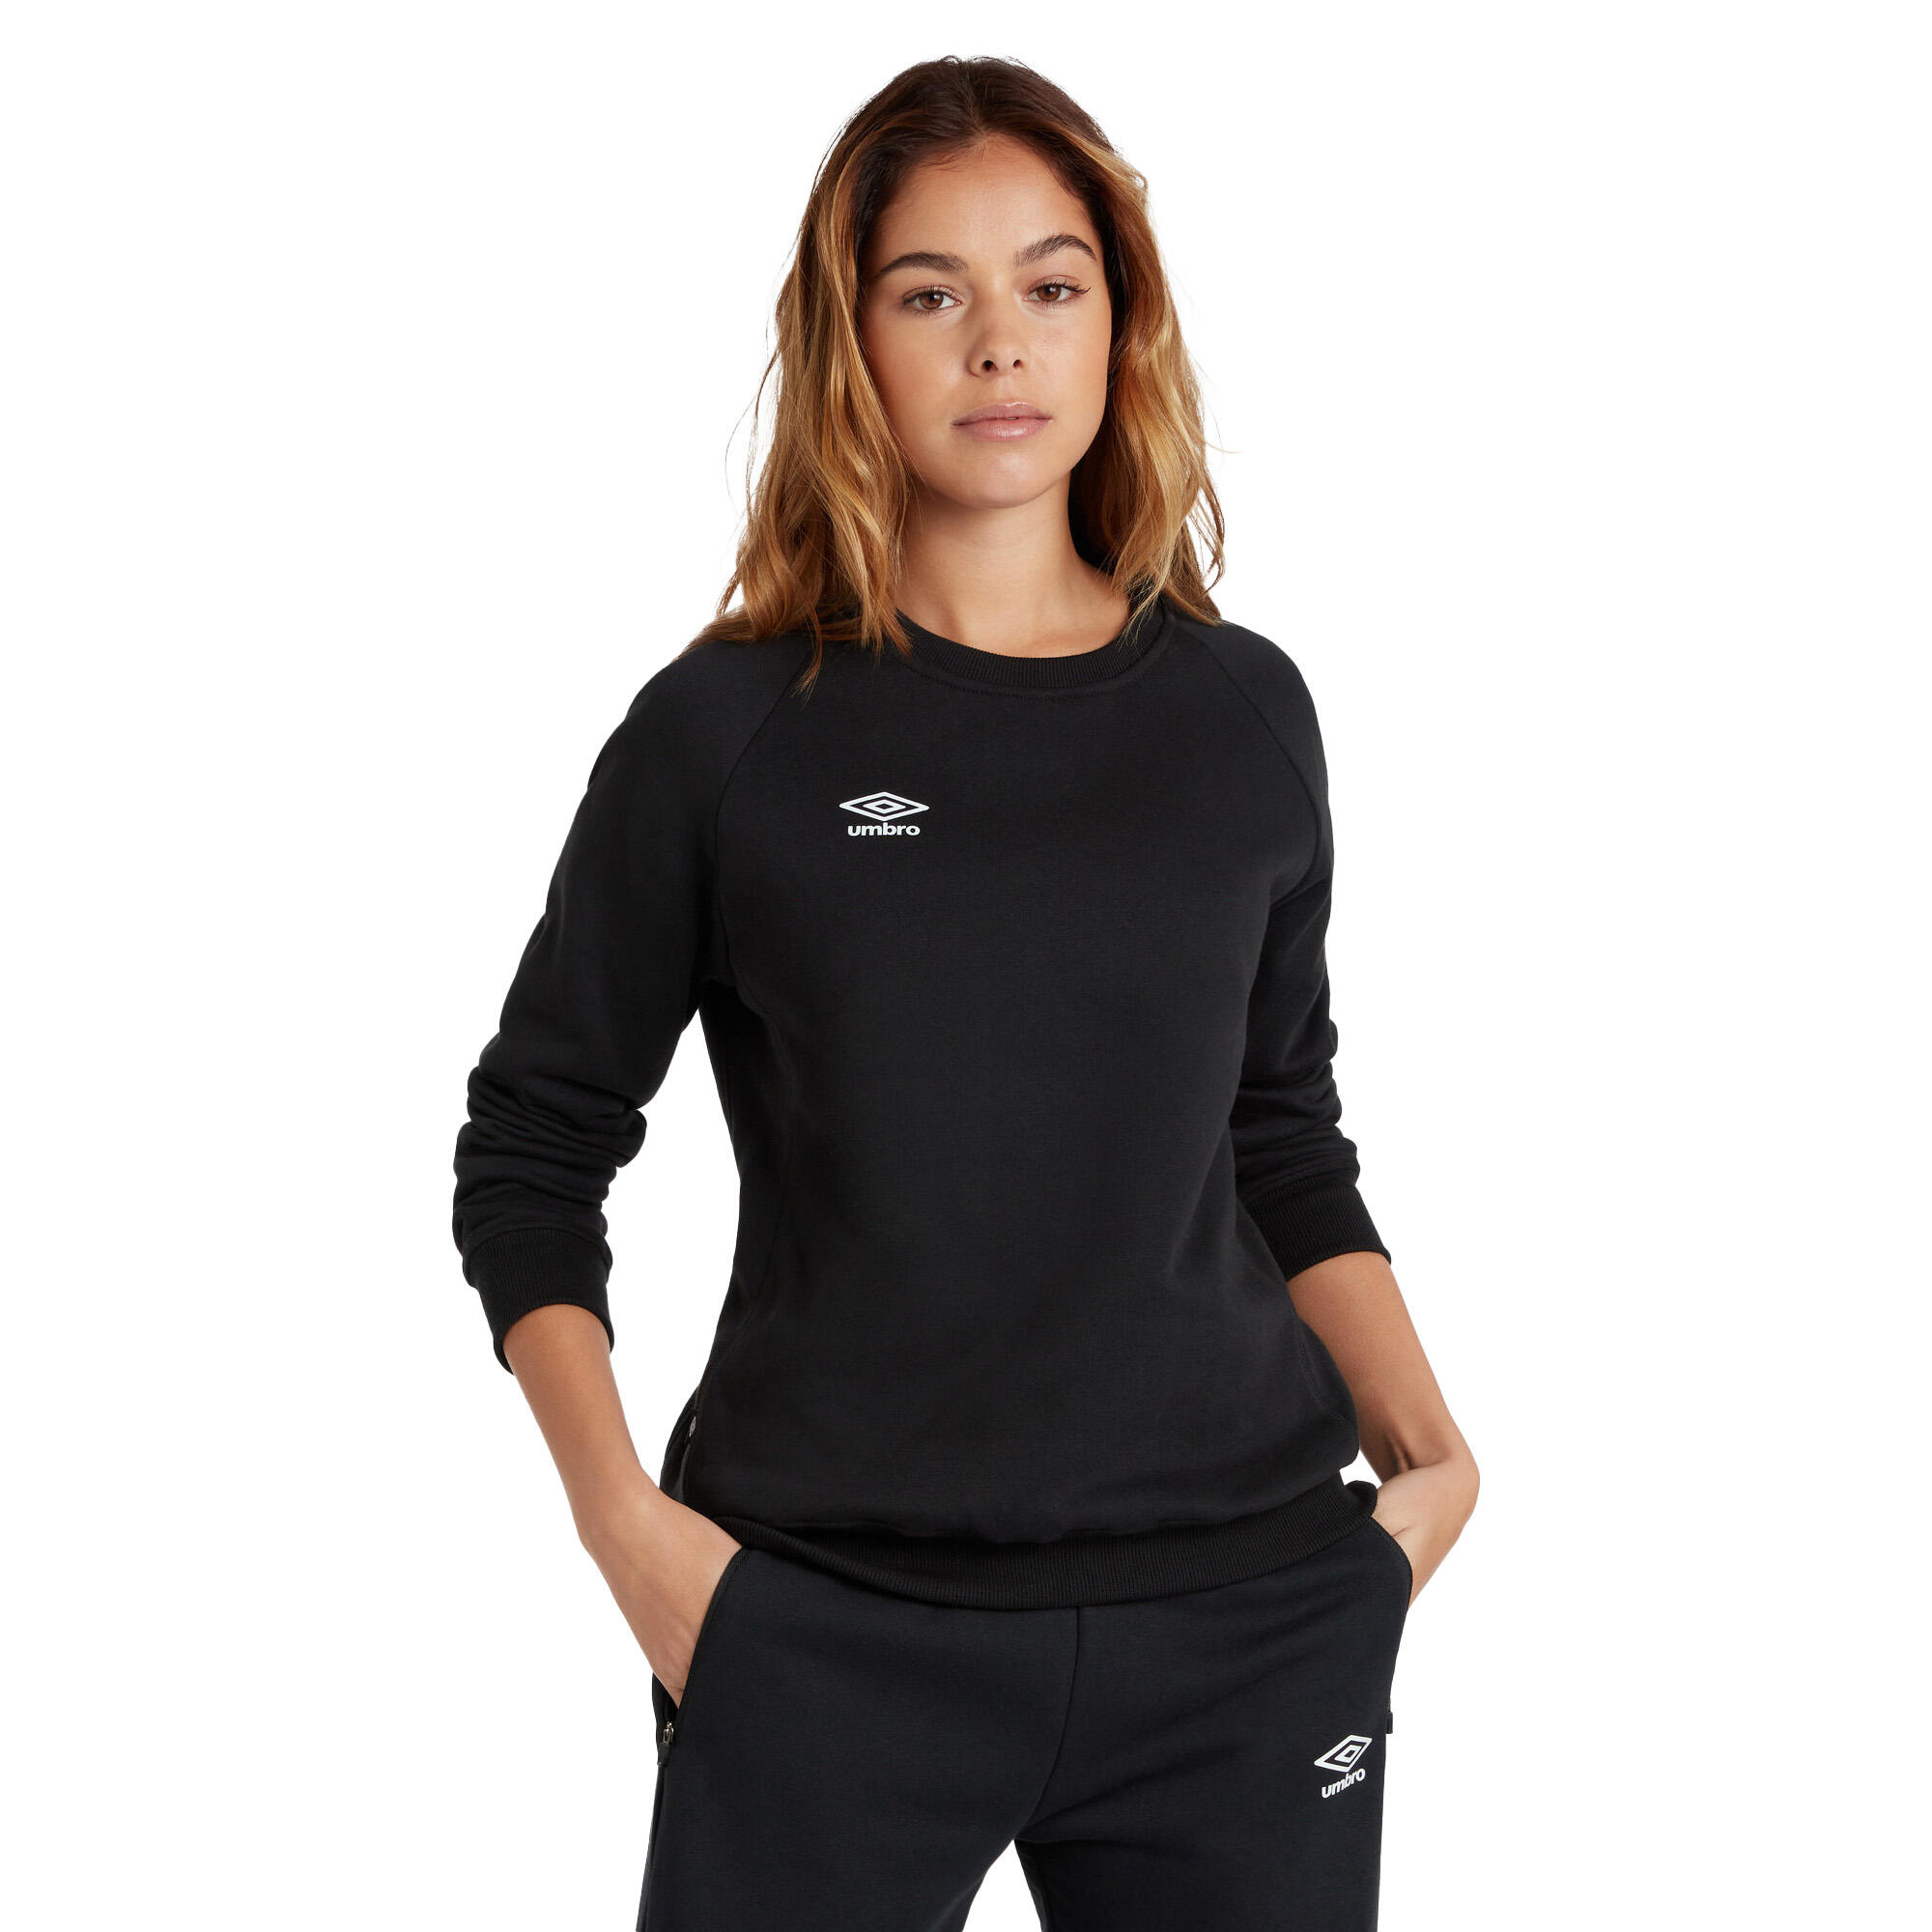 Womens/Ladies Club Leisure Sweatshirt (Black/White) 4/4